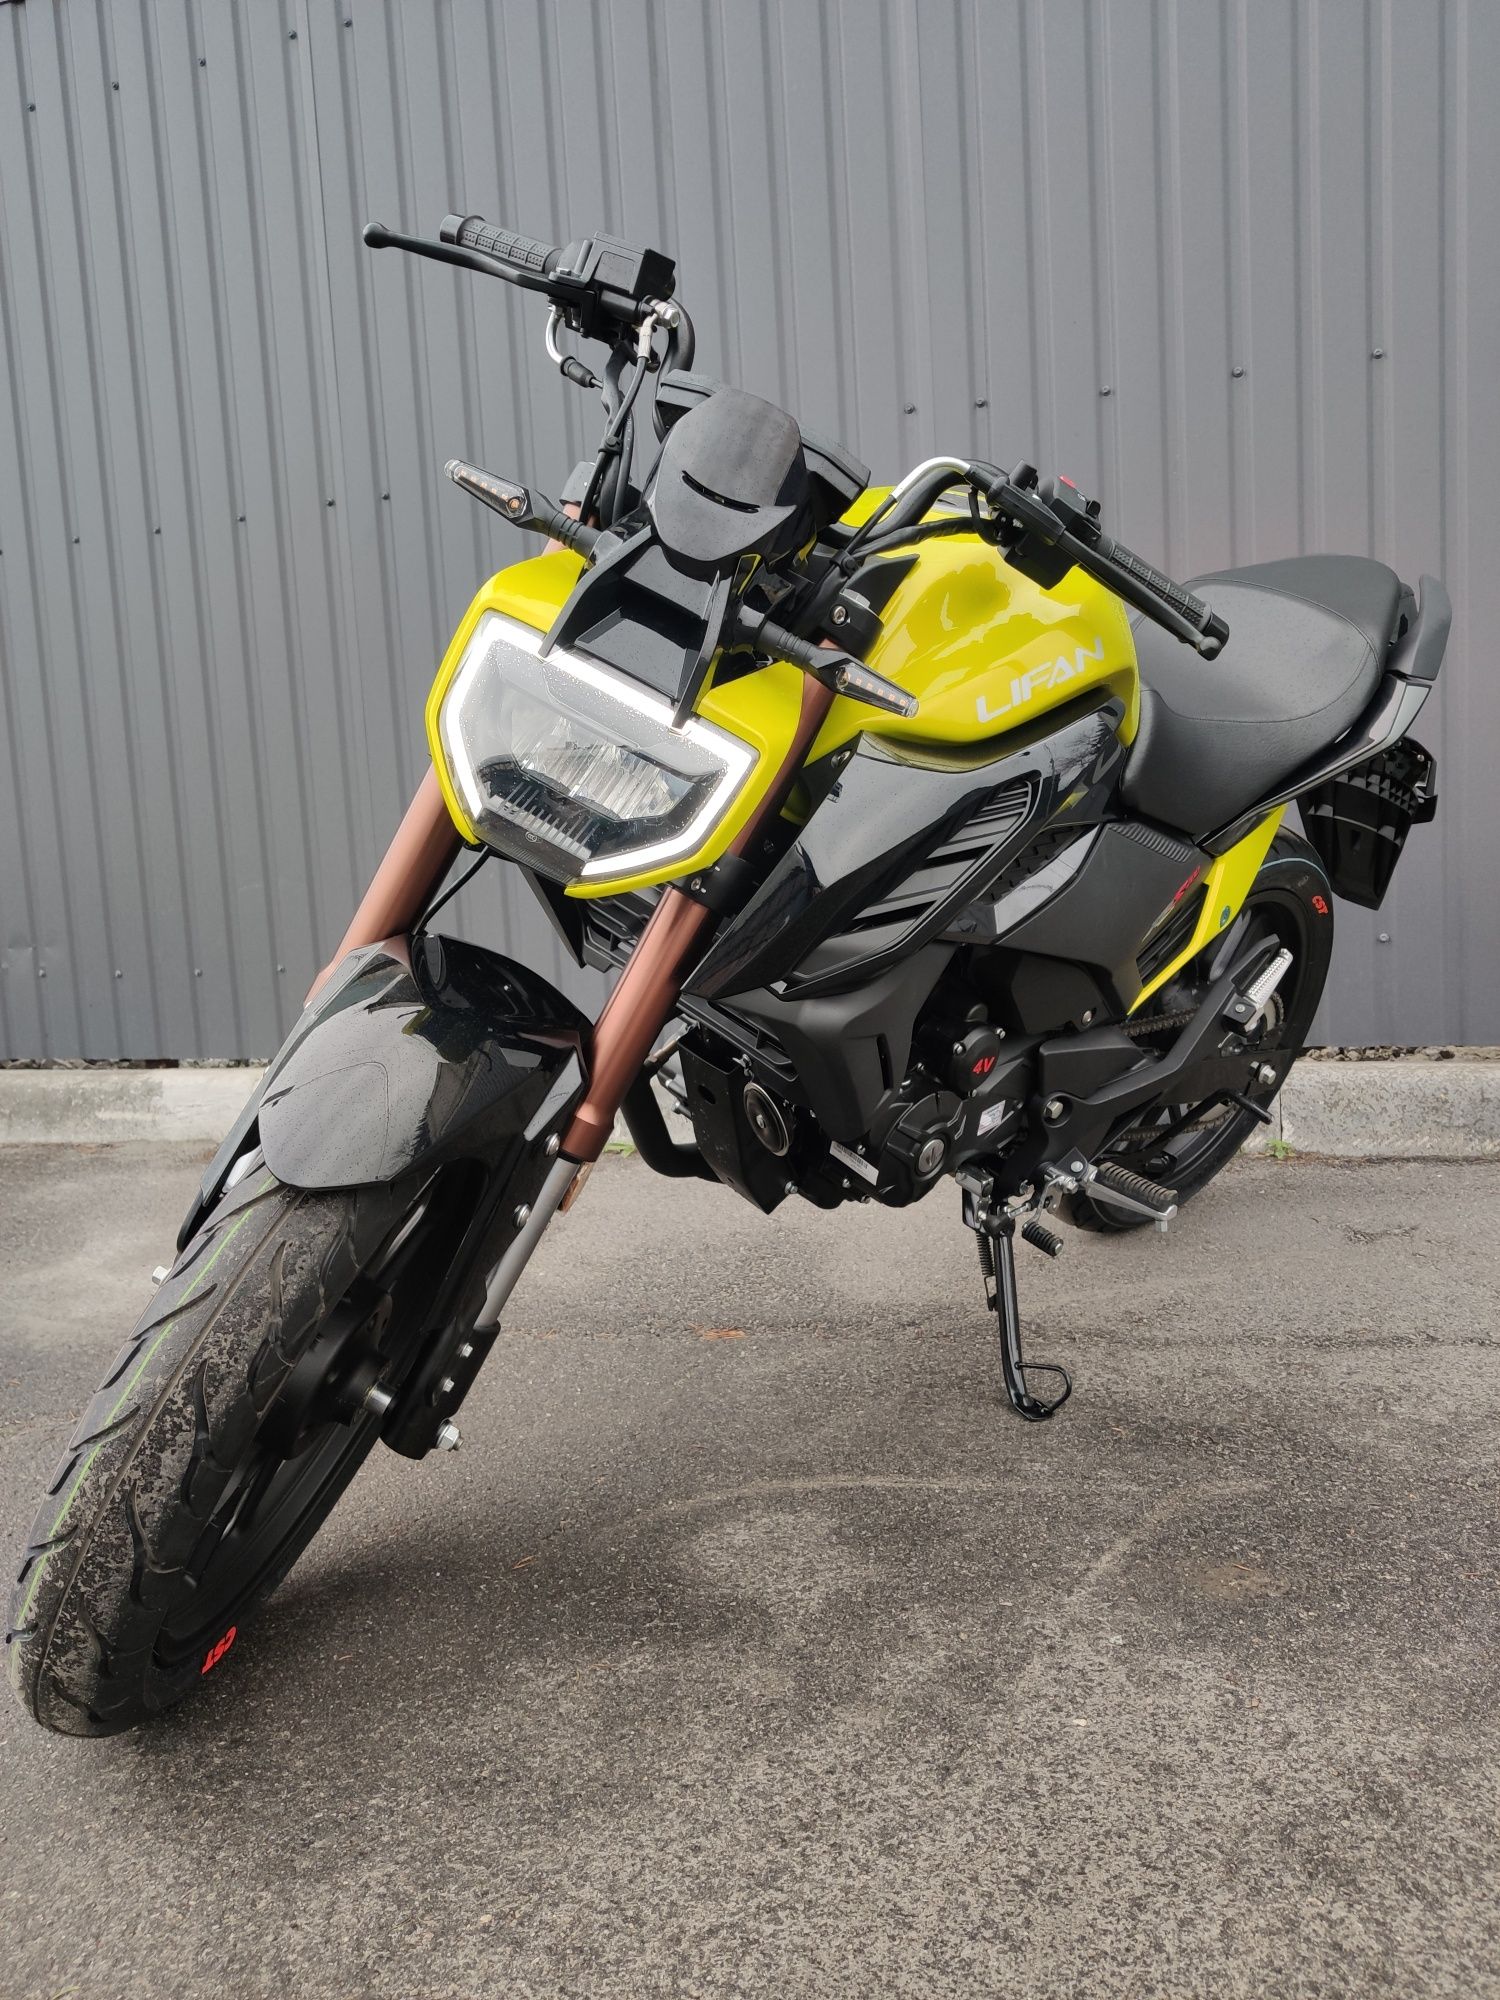 Мотоцикл Lifan KPS 200 (ABS, инжектор) мотосалон MotoPlus